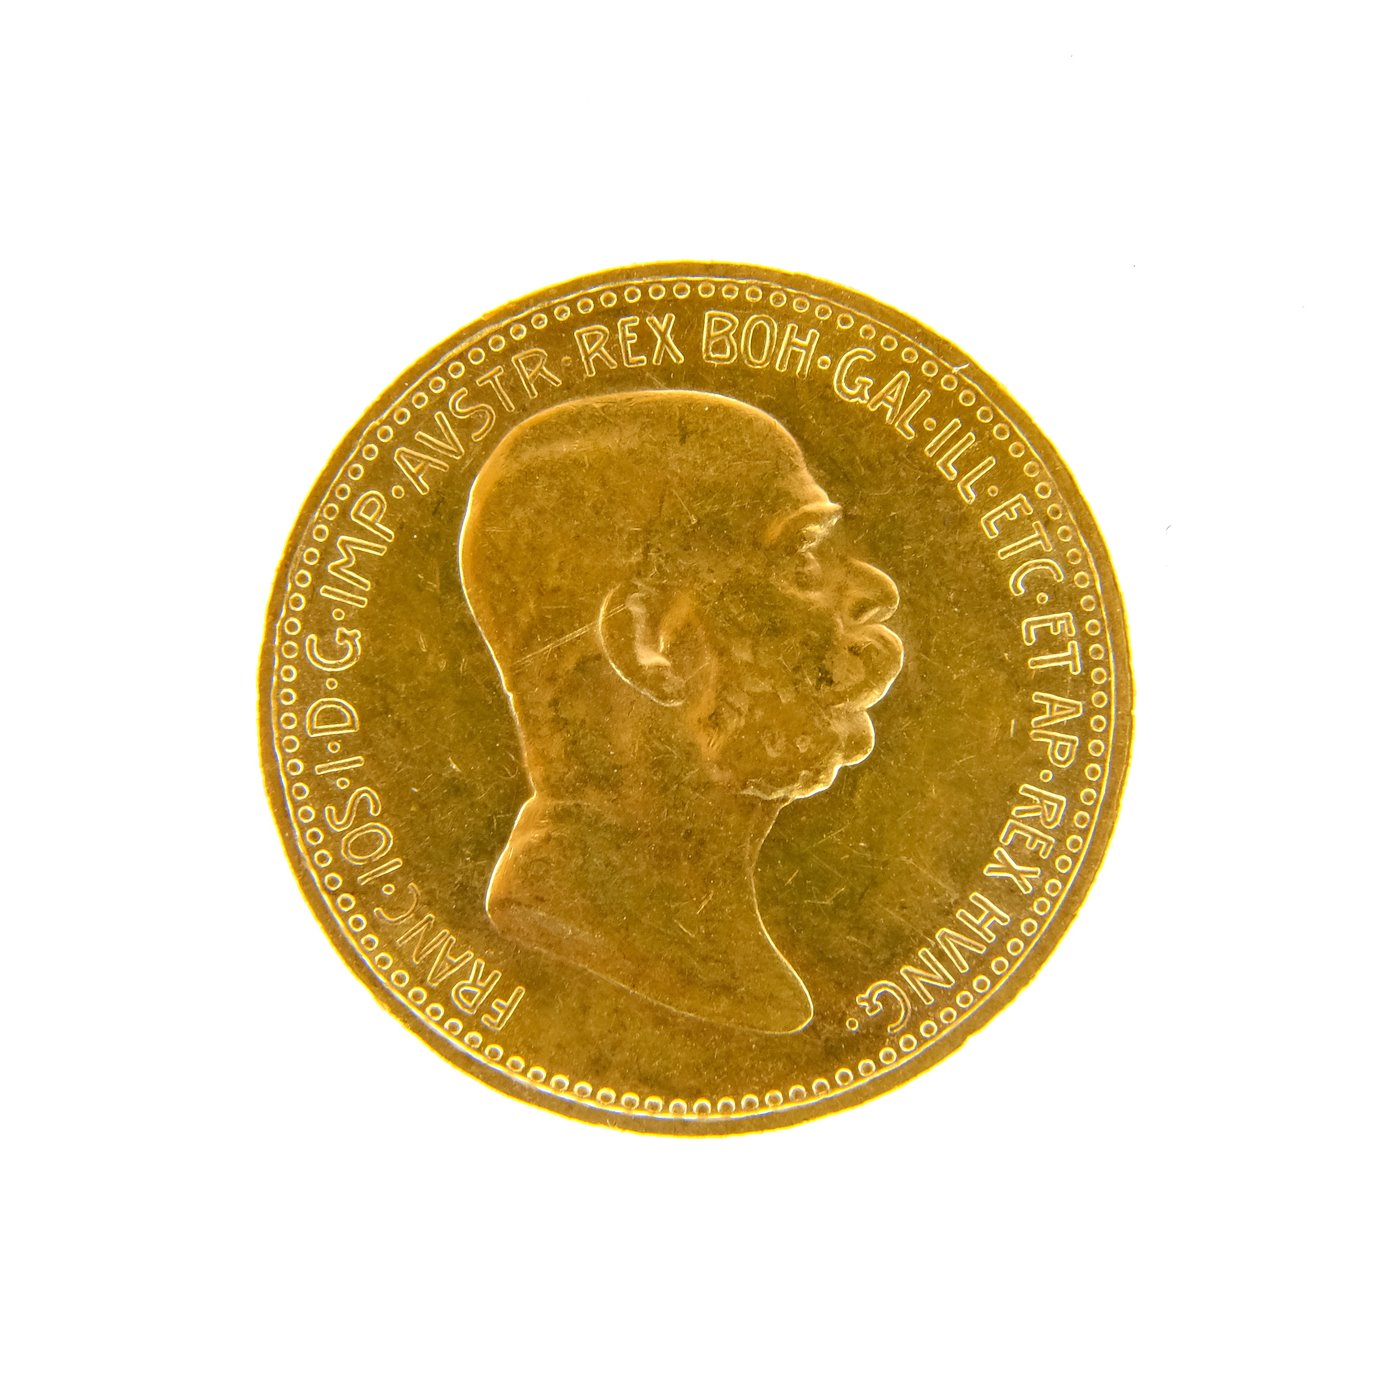 .. - Rakousko Uhersko zlatá 10 Koruna 1908 výroční rakouská, lato 900/1000, hrubá hmotnost 3,387g